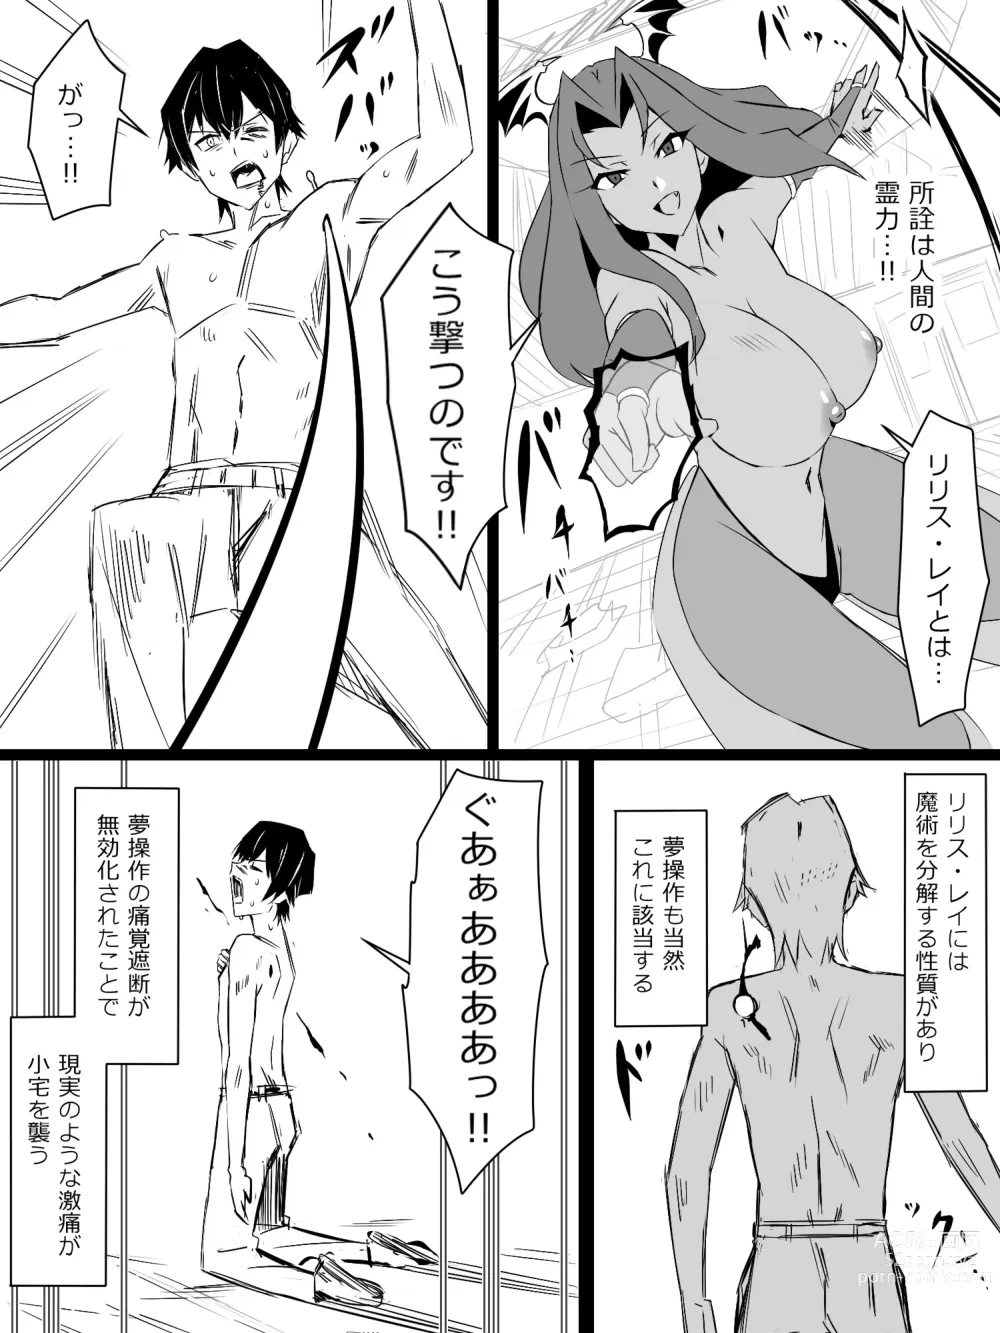 Page 53 of doujinshi Shoukanjuu DX DeliHealizer